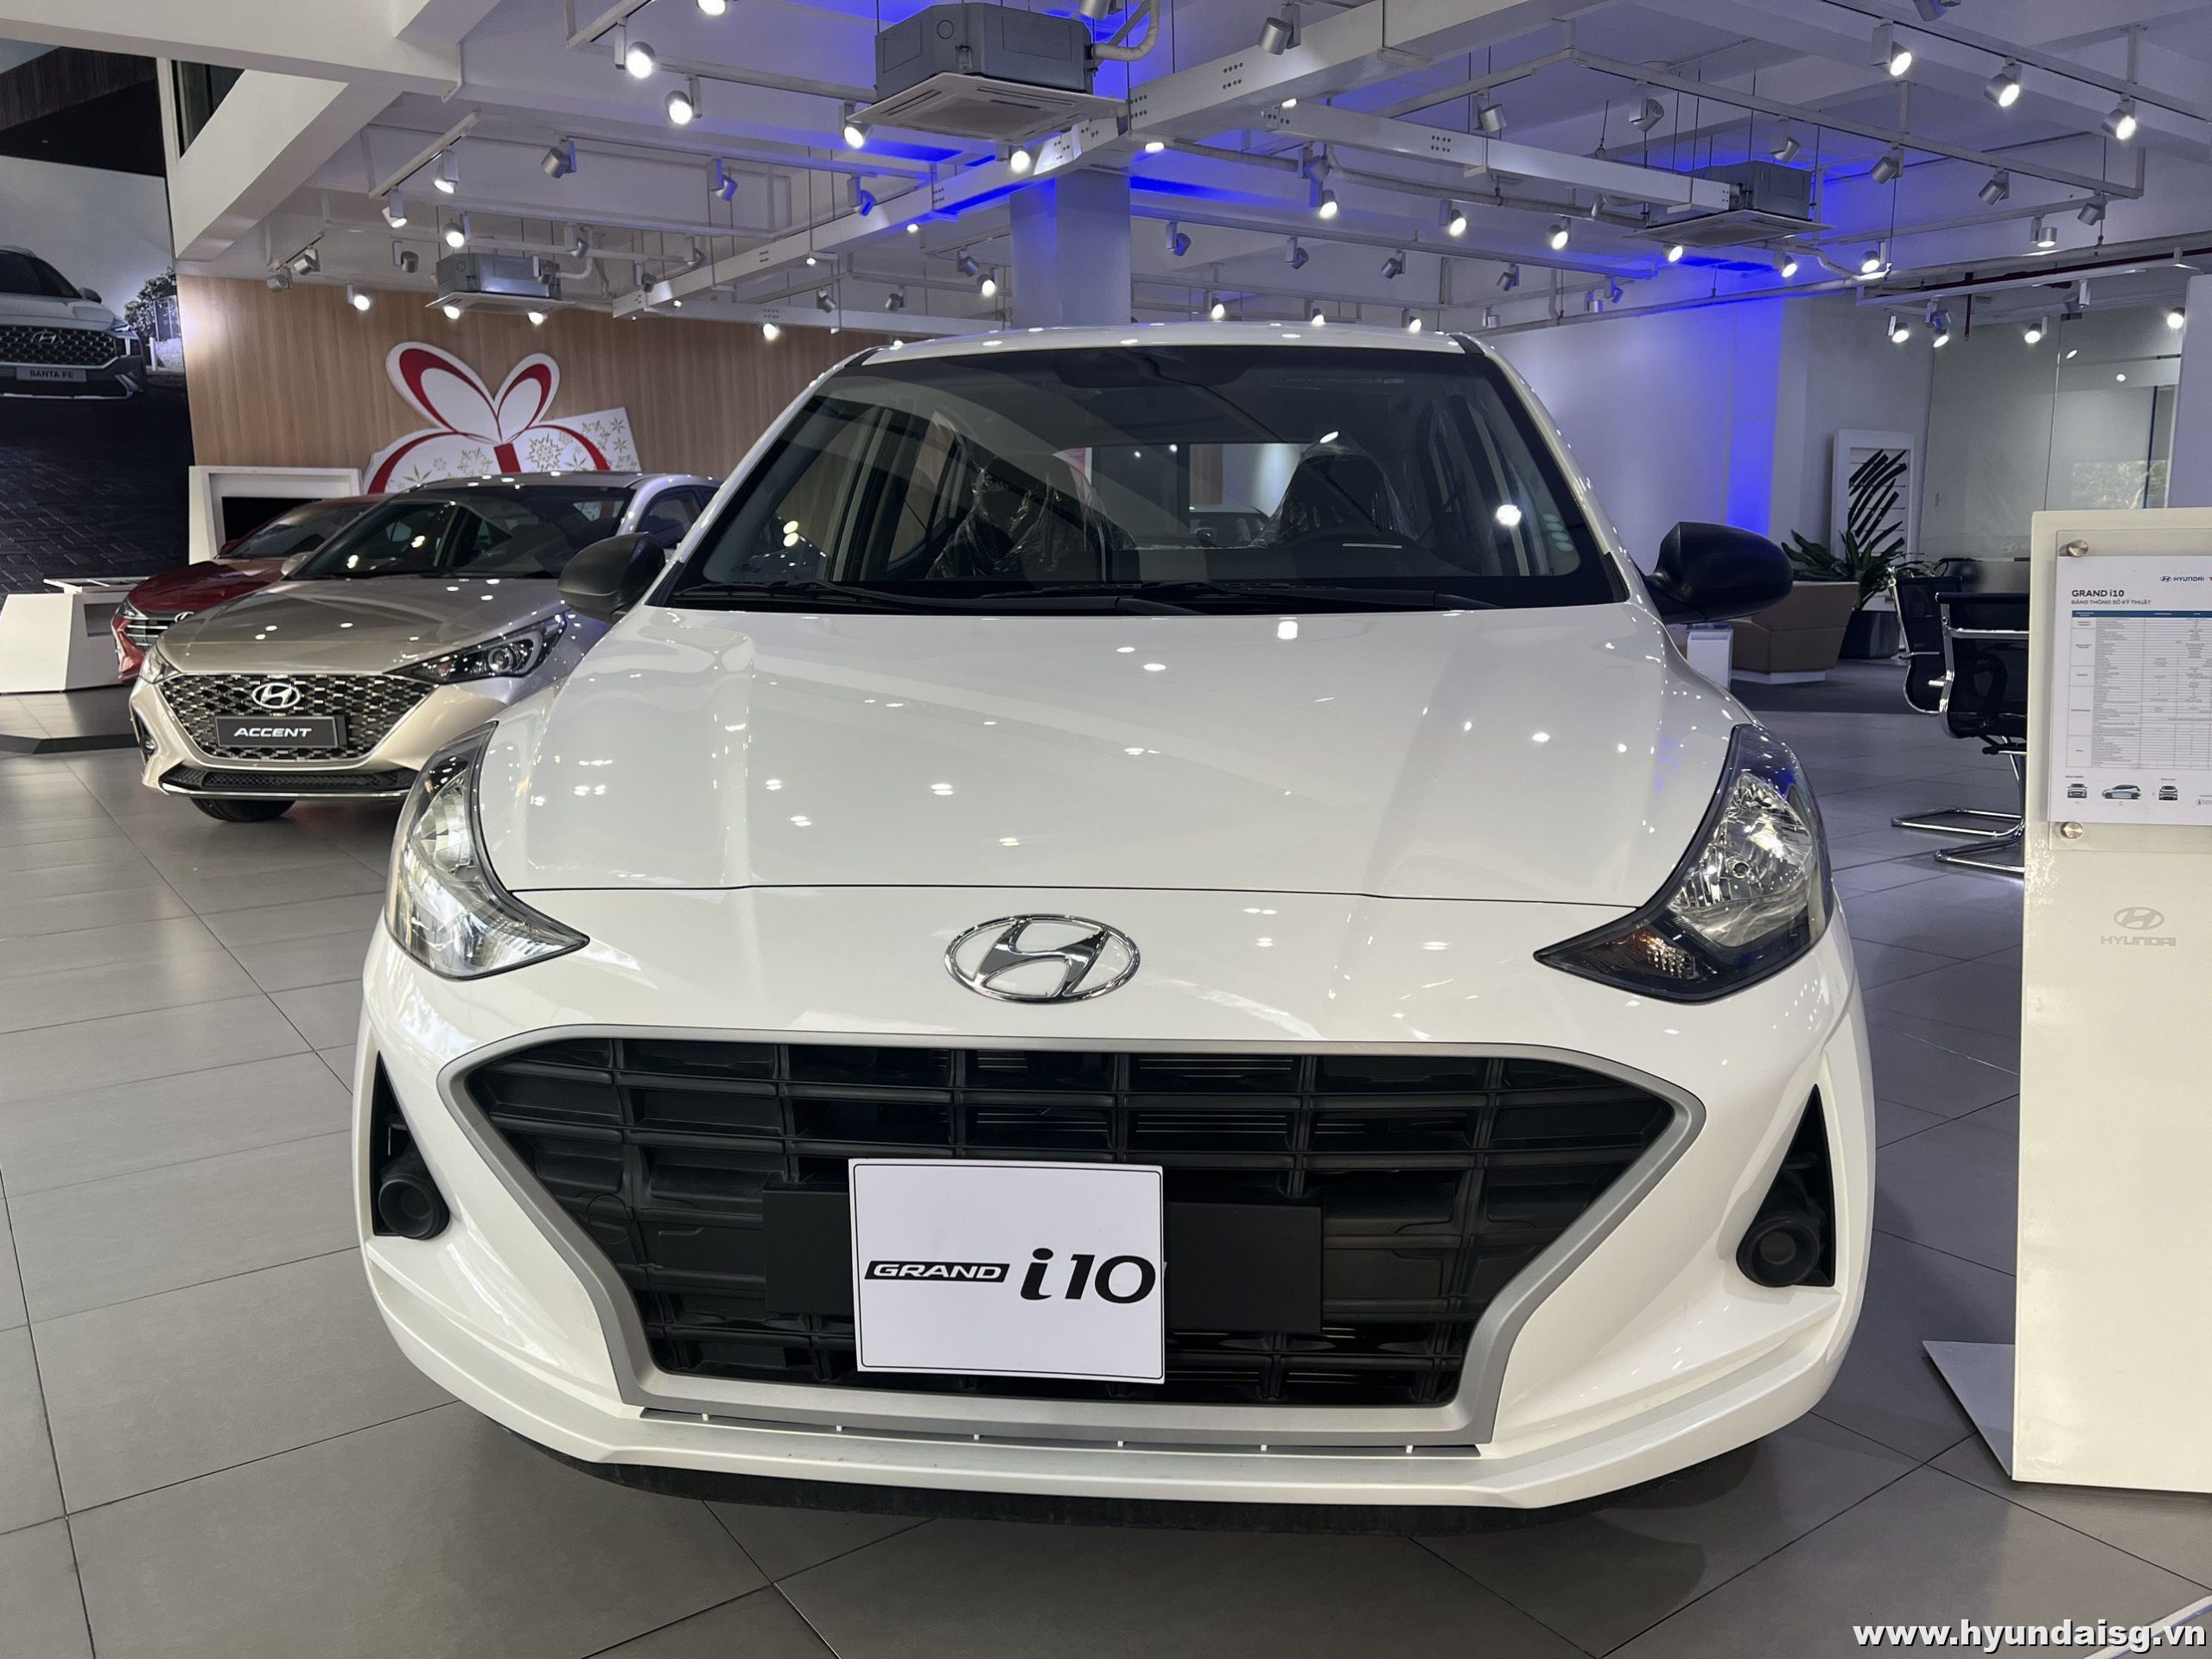 Hyundai i10 màu trắng thật đẹp và tươi tắn. Nó thể hiện tính năng động, năng động cùng với vẻ ngoài tinh tế và thời trang. Nếu bạn yêu thích những chiếc xe nhỏ nhắn, xinh tươi và tiện ích, thì hình ảnh của chúng tôi chắc sẽ là một điểm đến tuyệt vời!